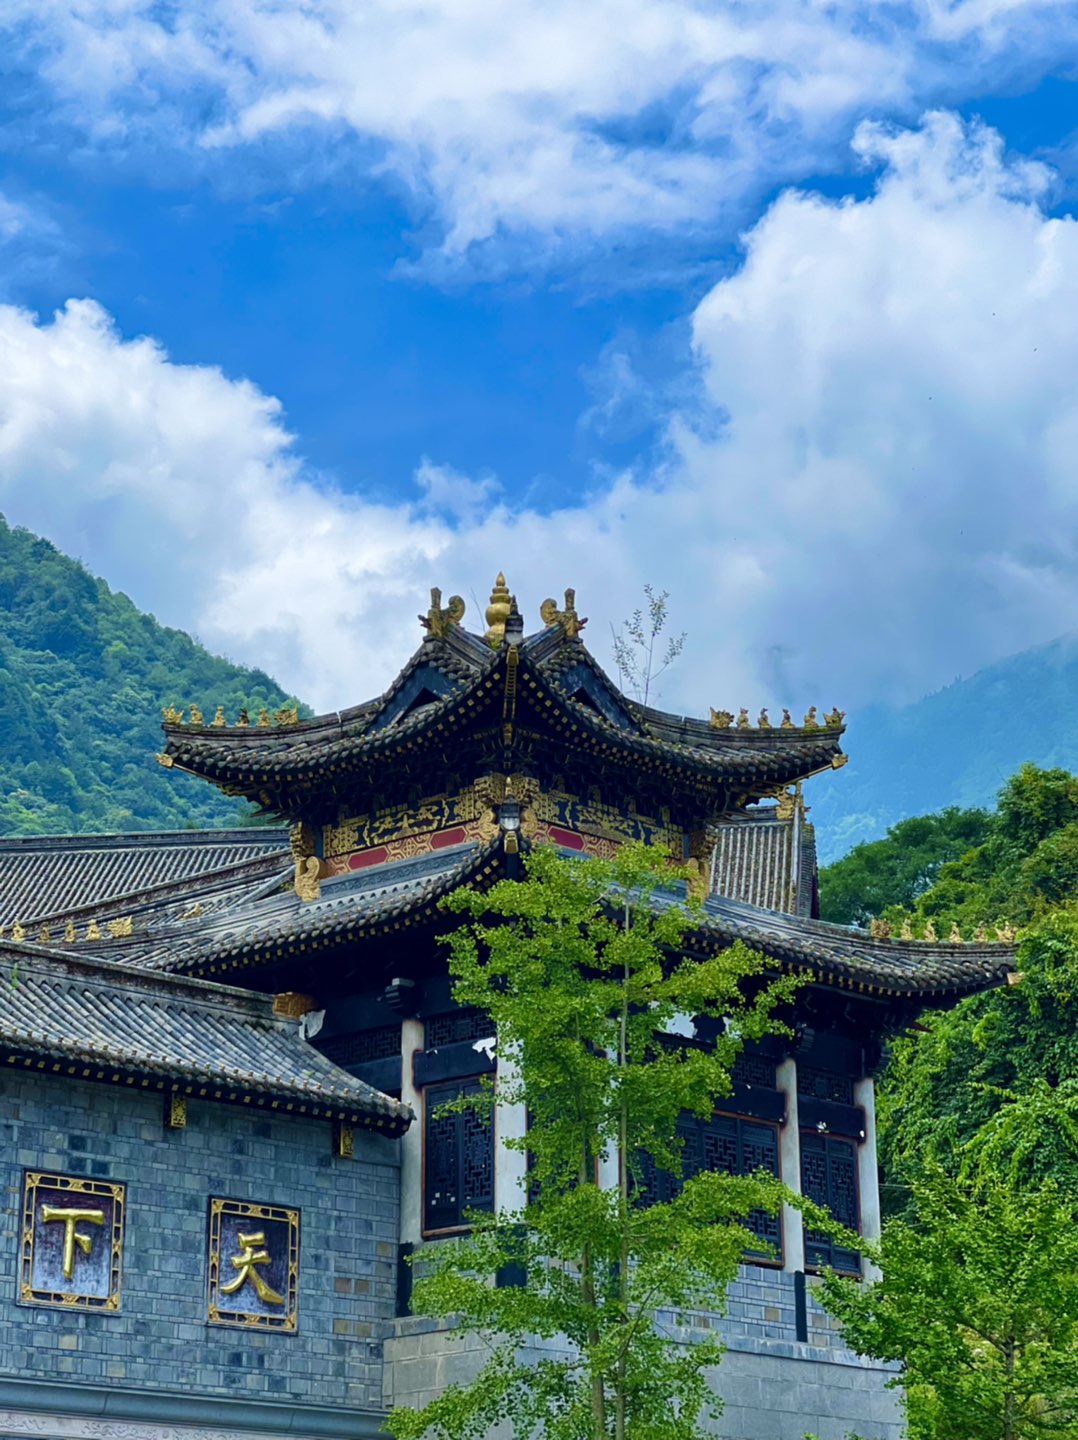 三门峡灵山寺风景区图片